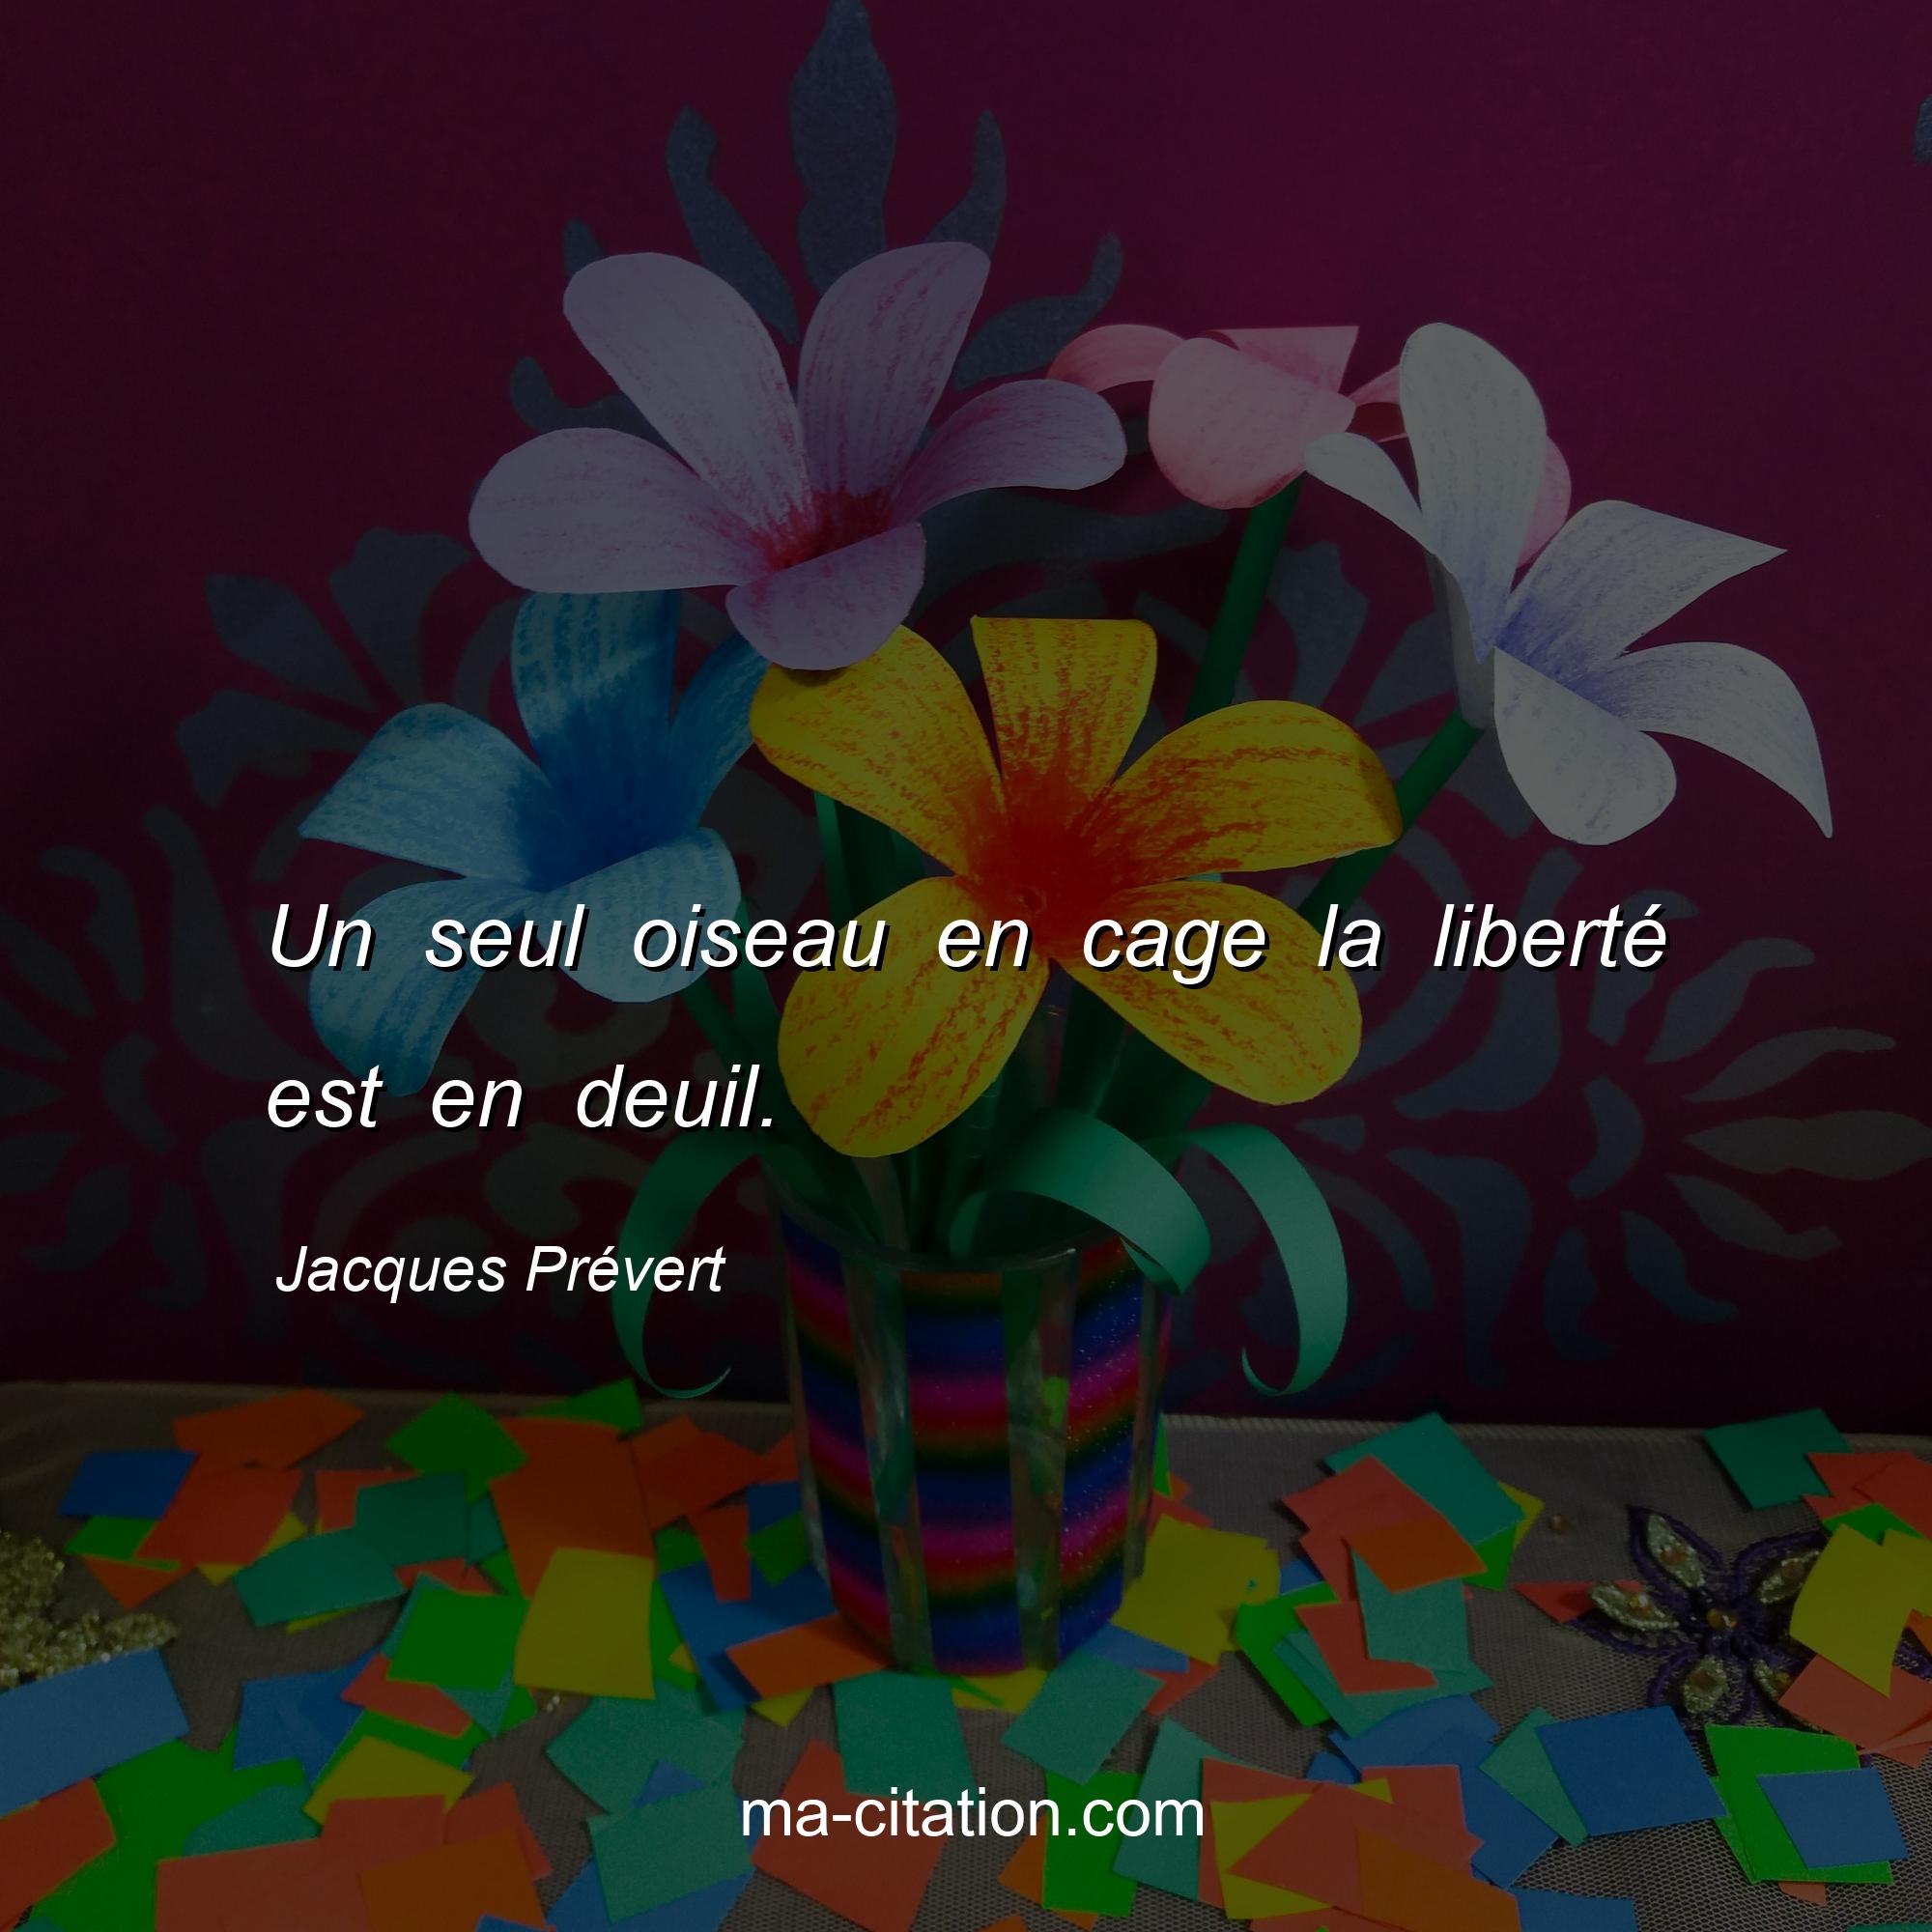 Jacques Prévert : Un seul oiseau en cage la liberté est en deuil.